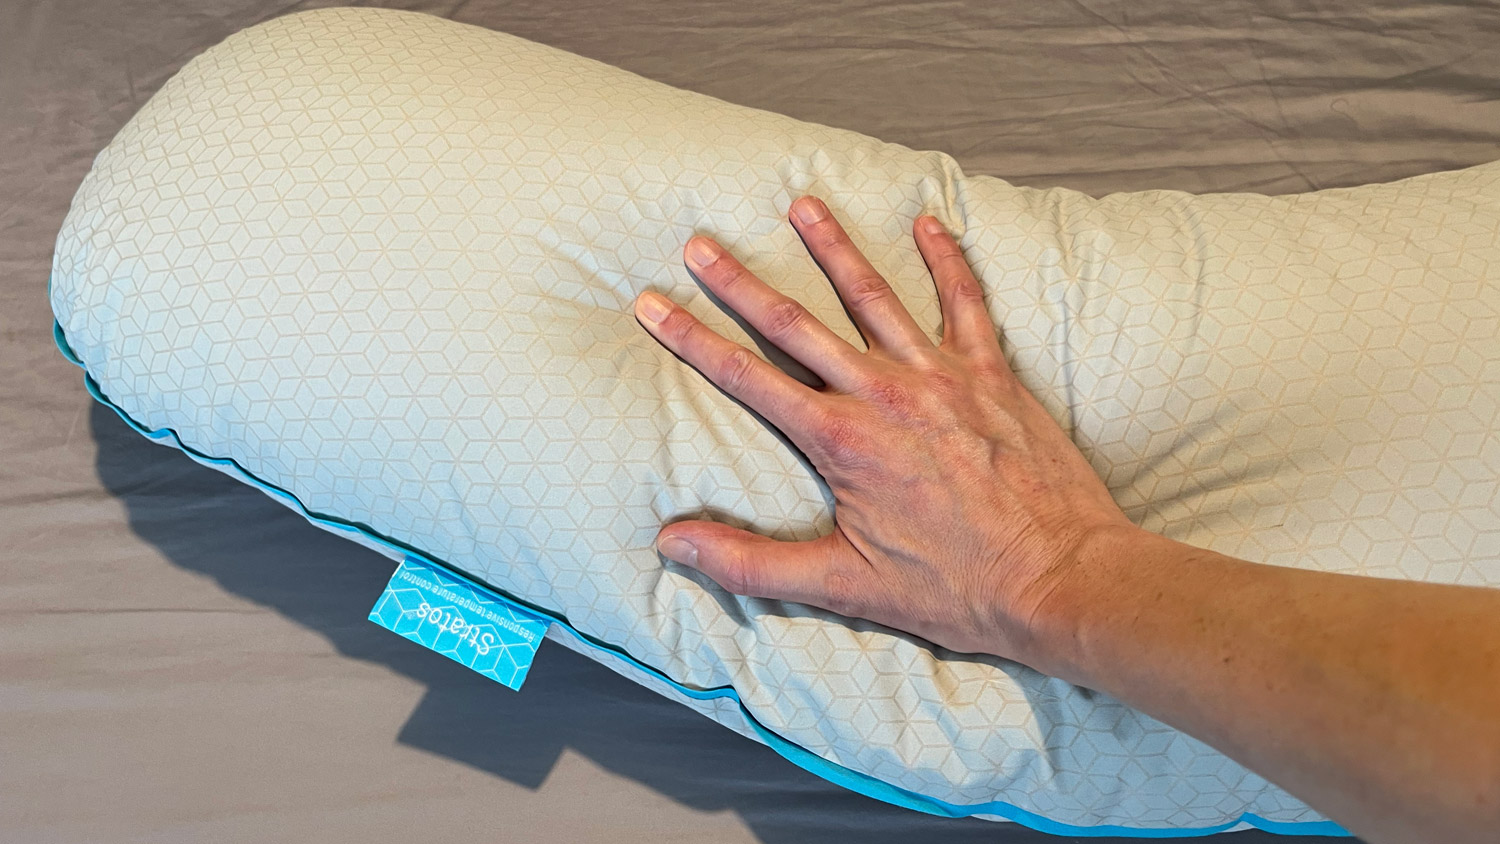 Simba Cooling Body Pillow review 2023: hug the pain away | TechRadar